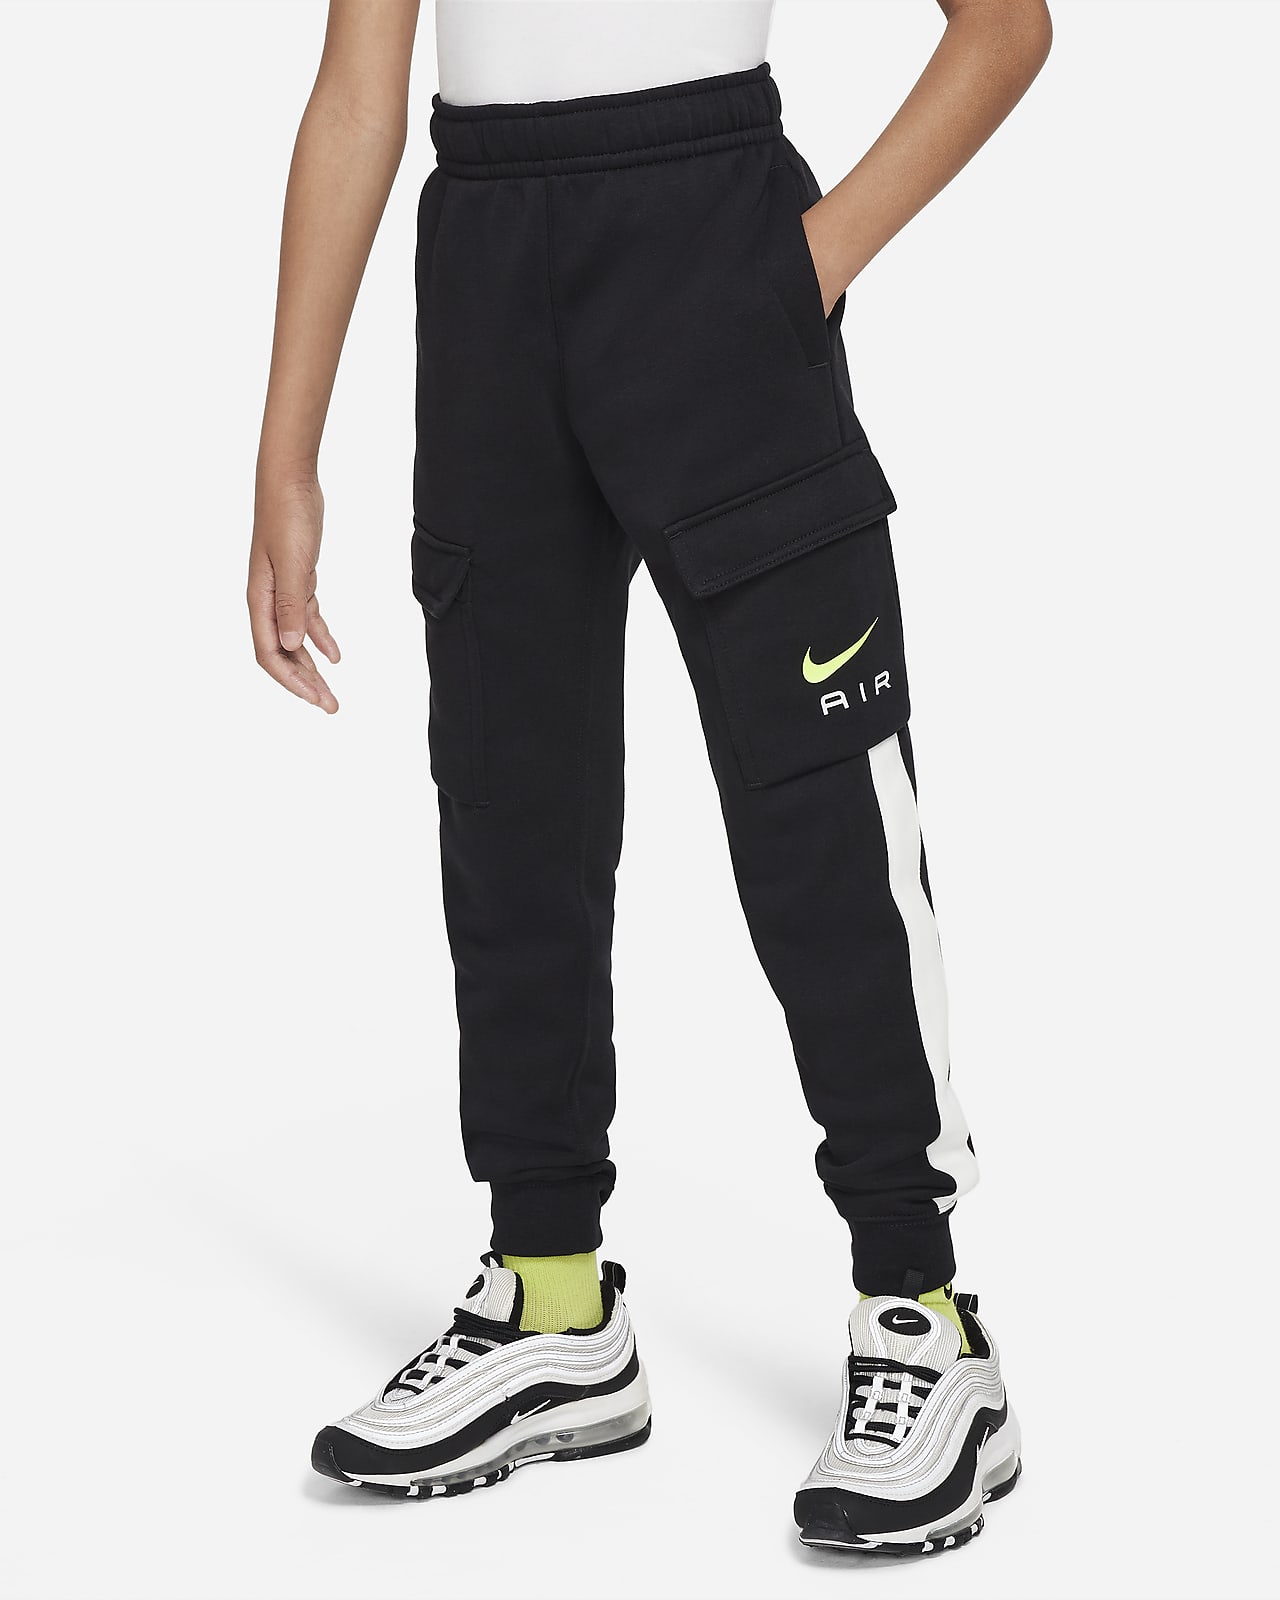 Nike Air Pantalons cargo de teixit Fleece - Nen/a